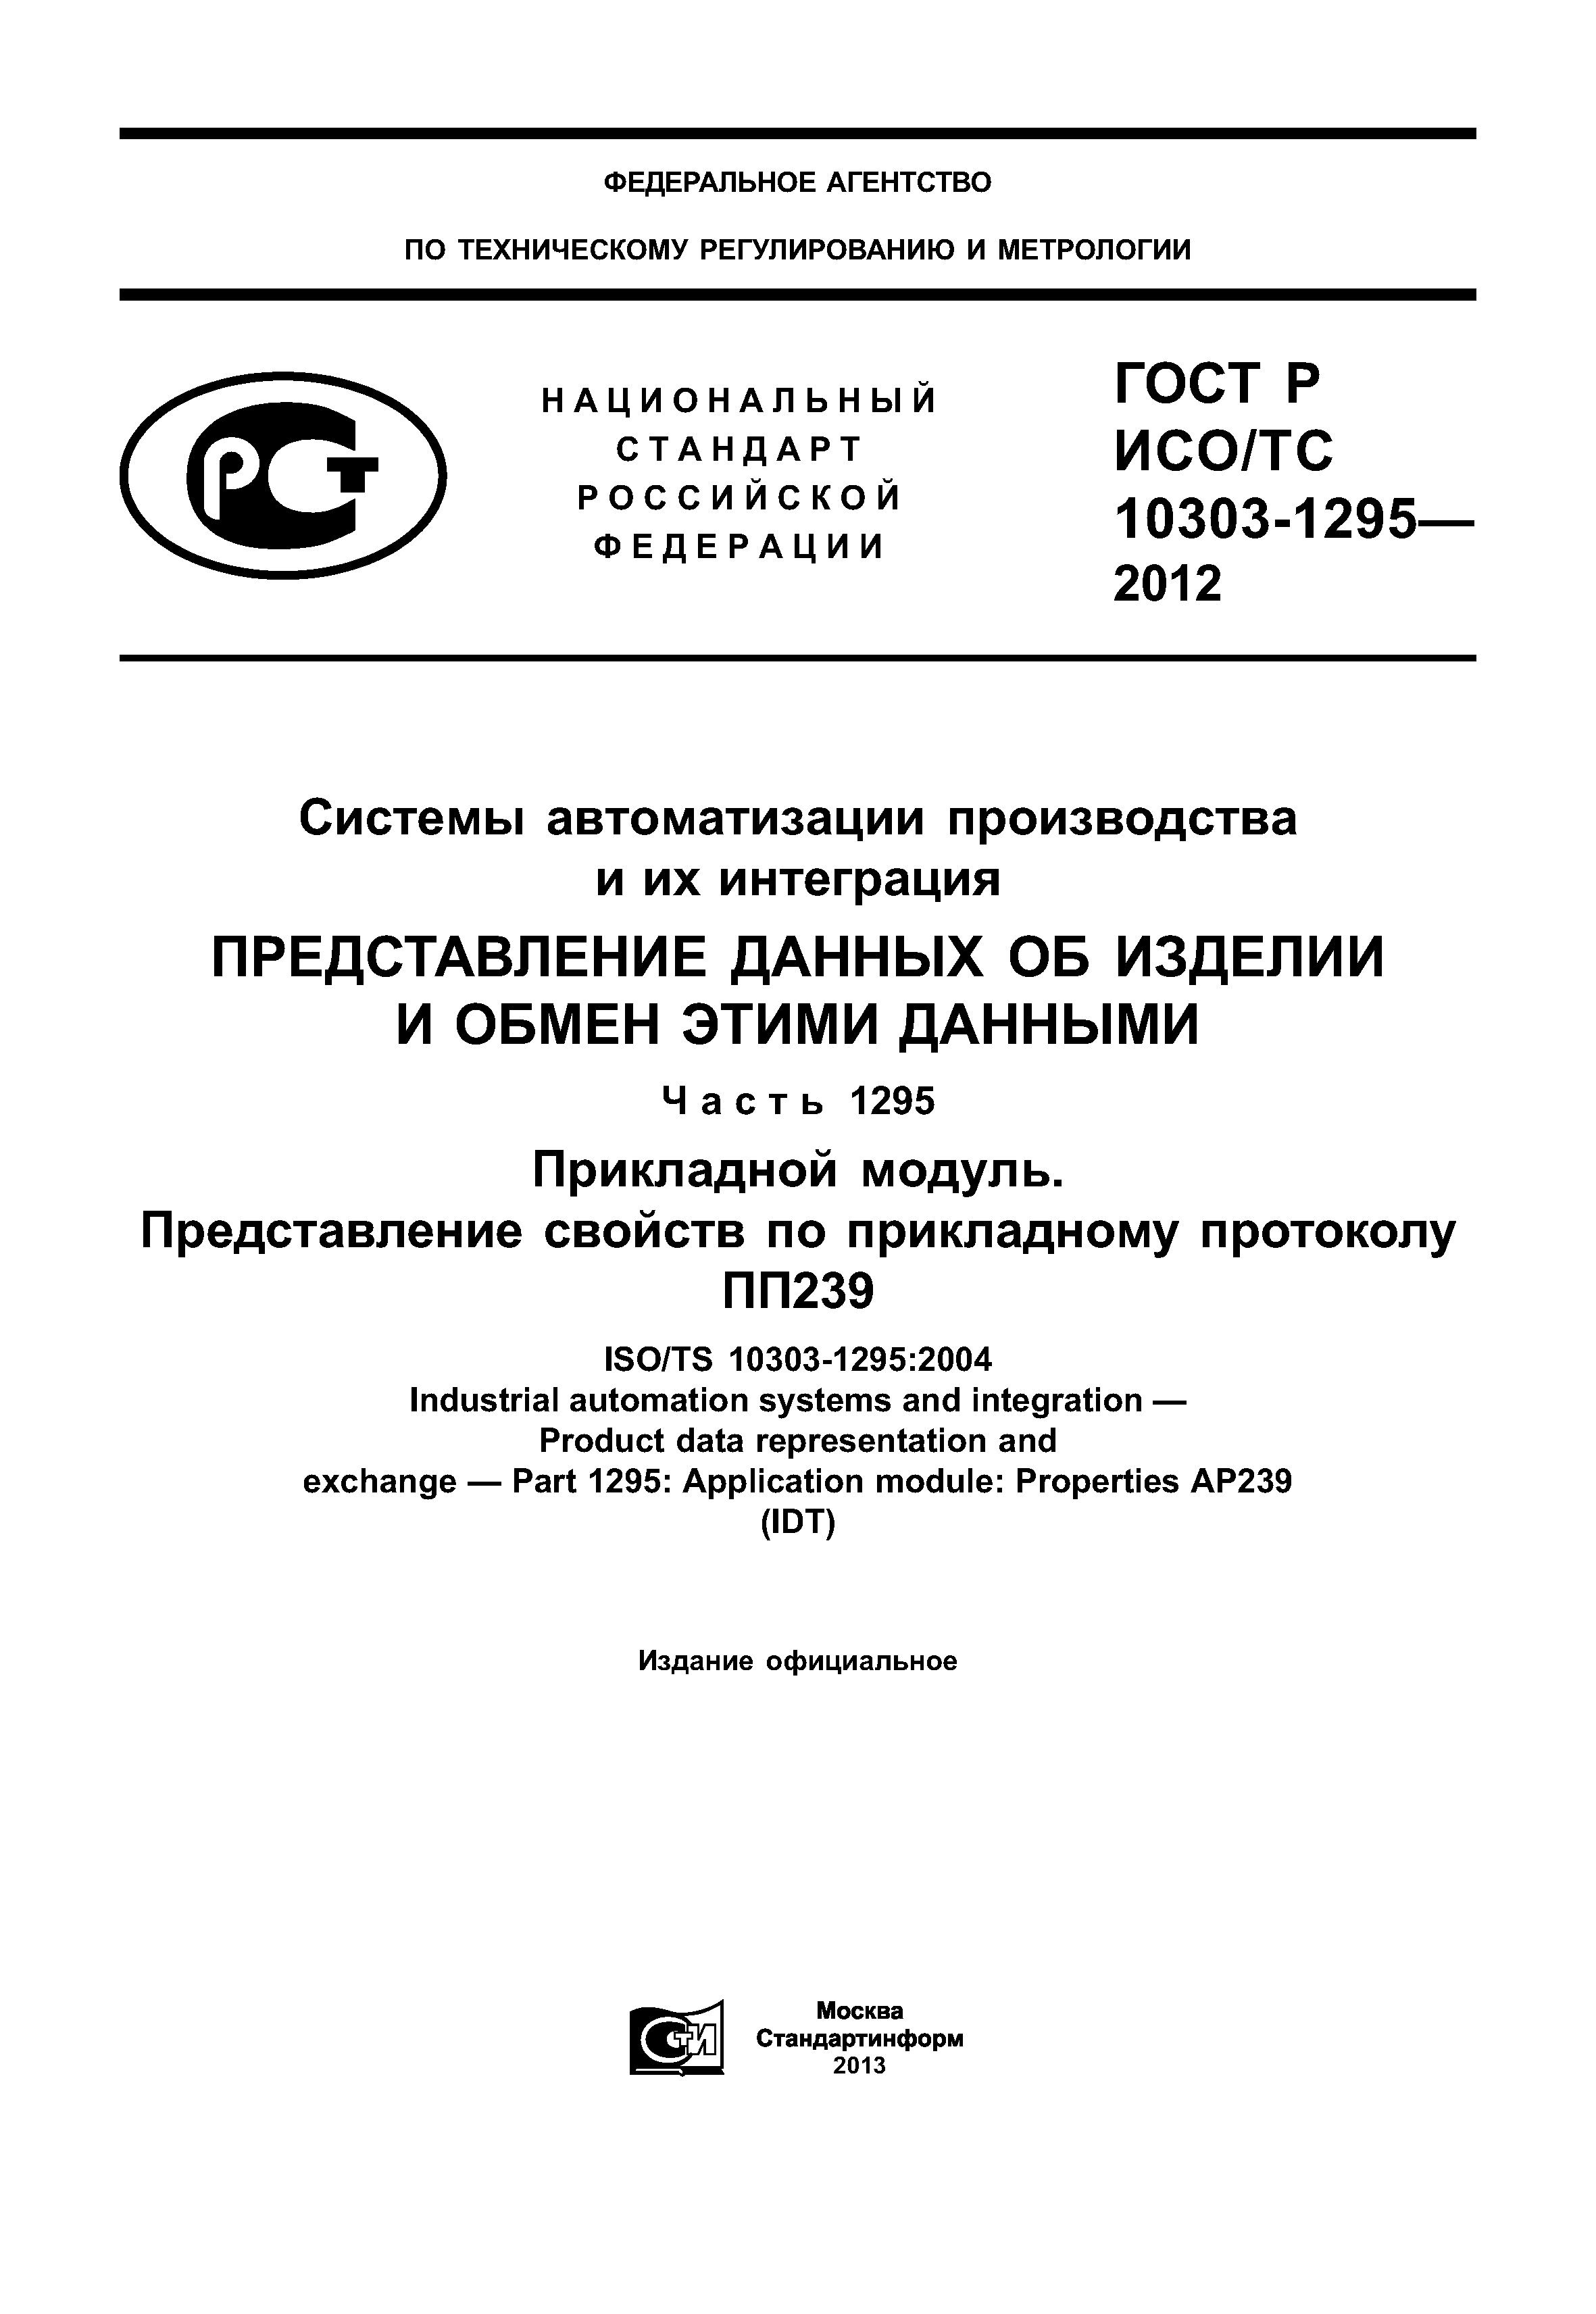 ГОСТ Р ИСО/ТС 10303-1295-2012